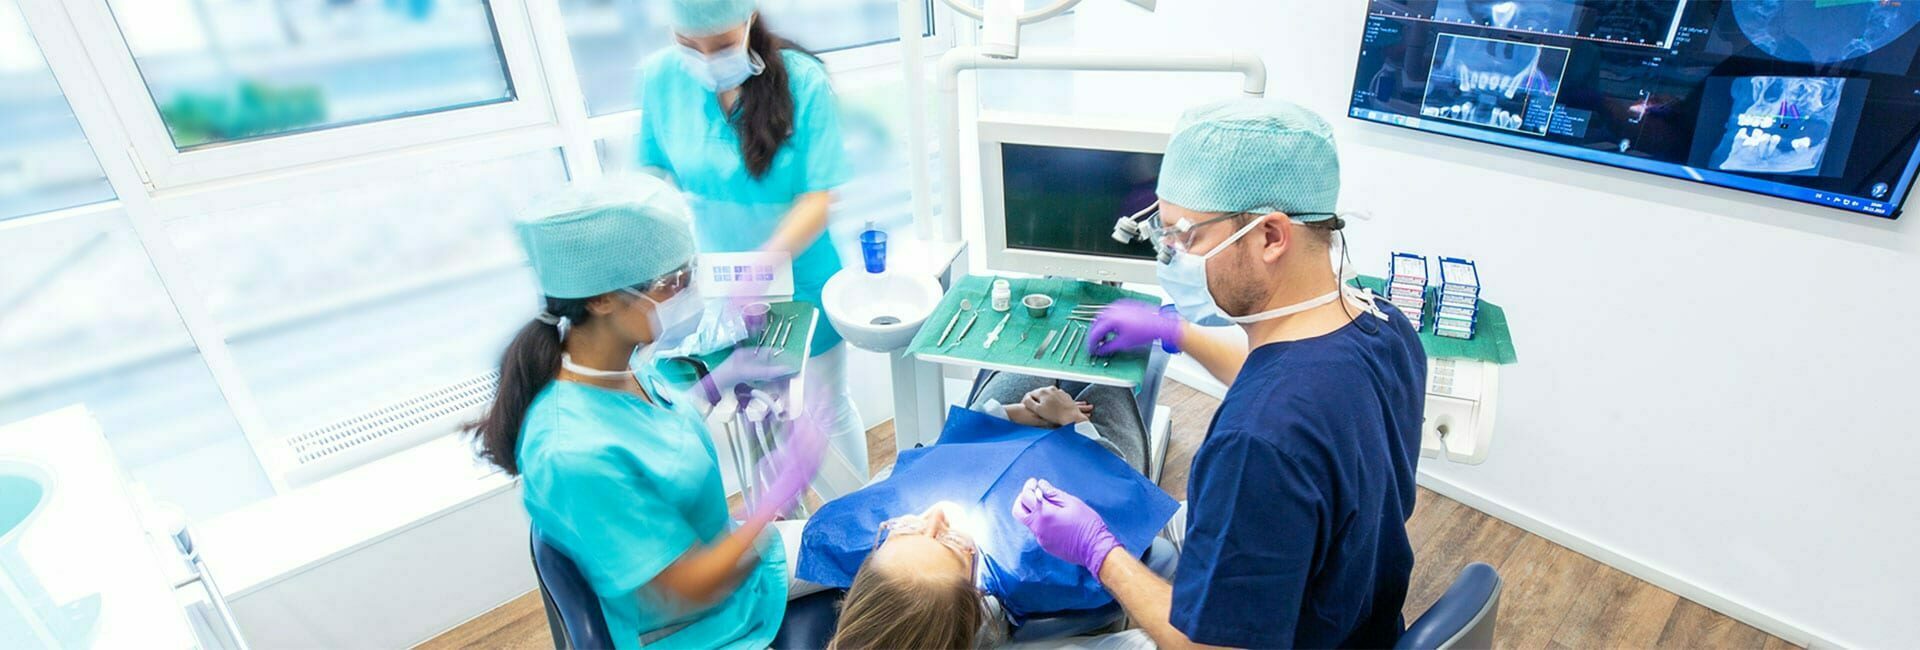 Zahnmedizinische Fachangestellte, Zahnarzthelferin assistiert Zahnarzt